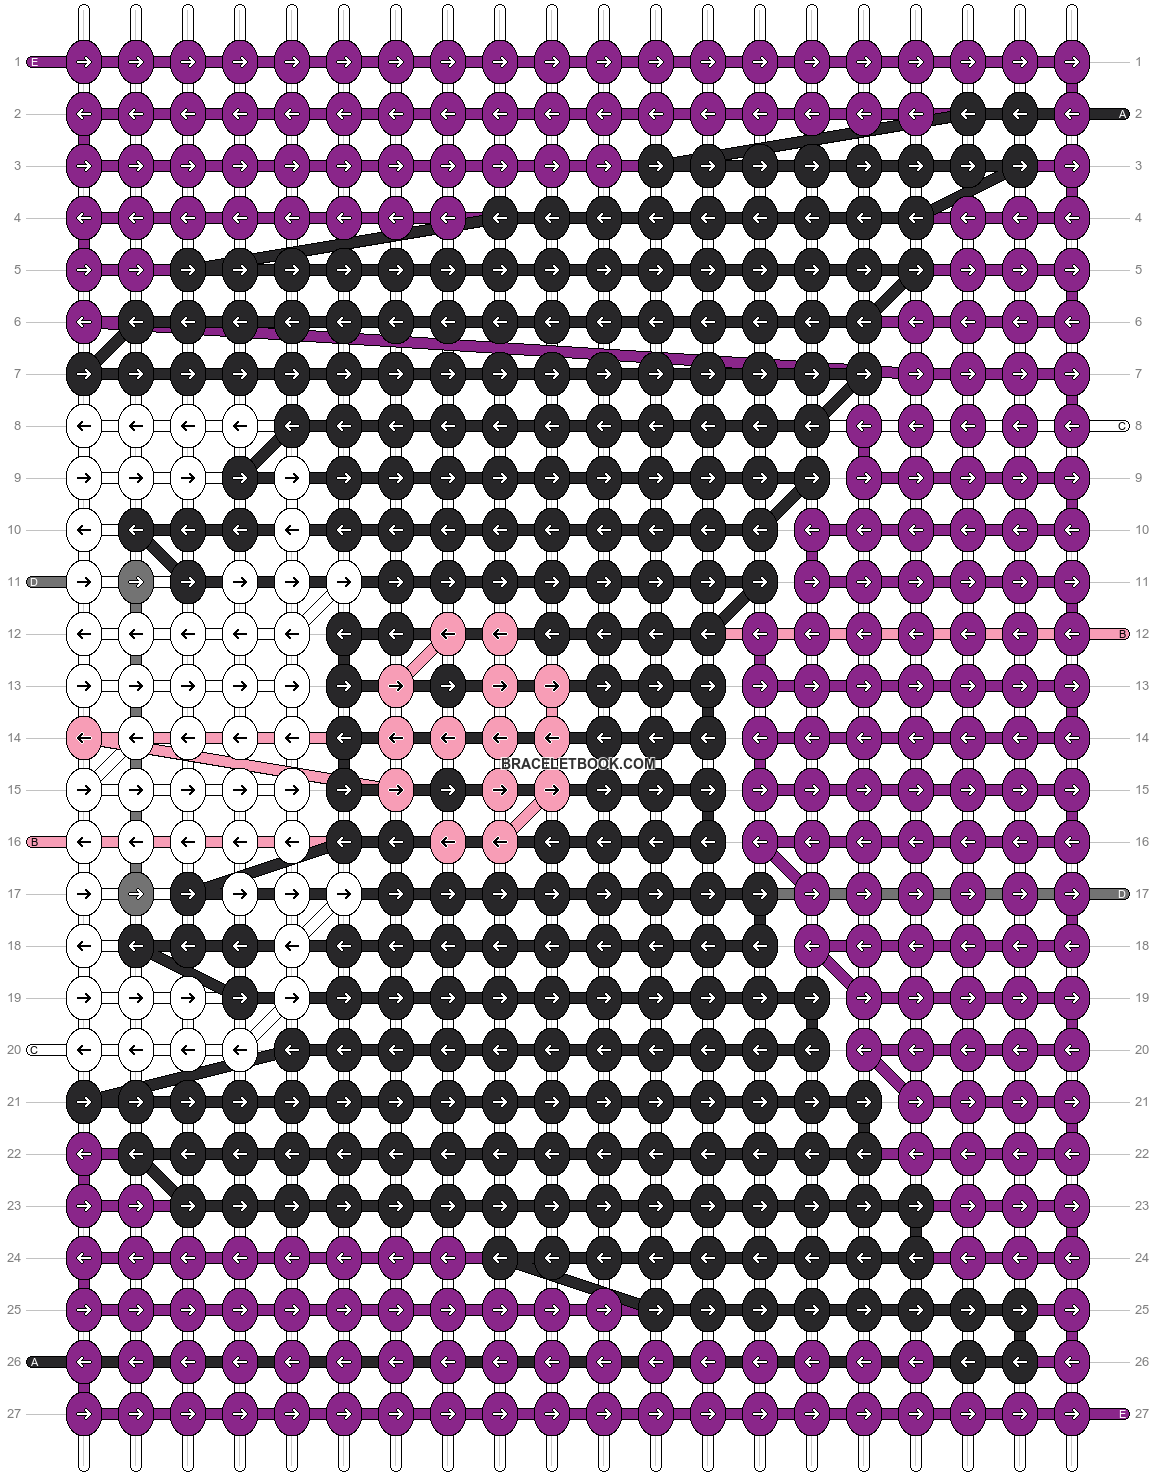 Alpha pattern #44214, BraceletBook